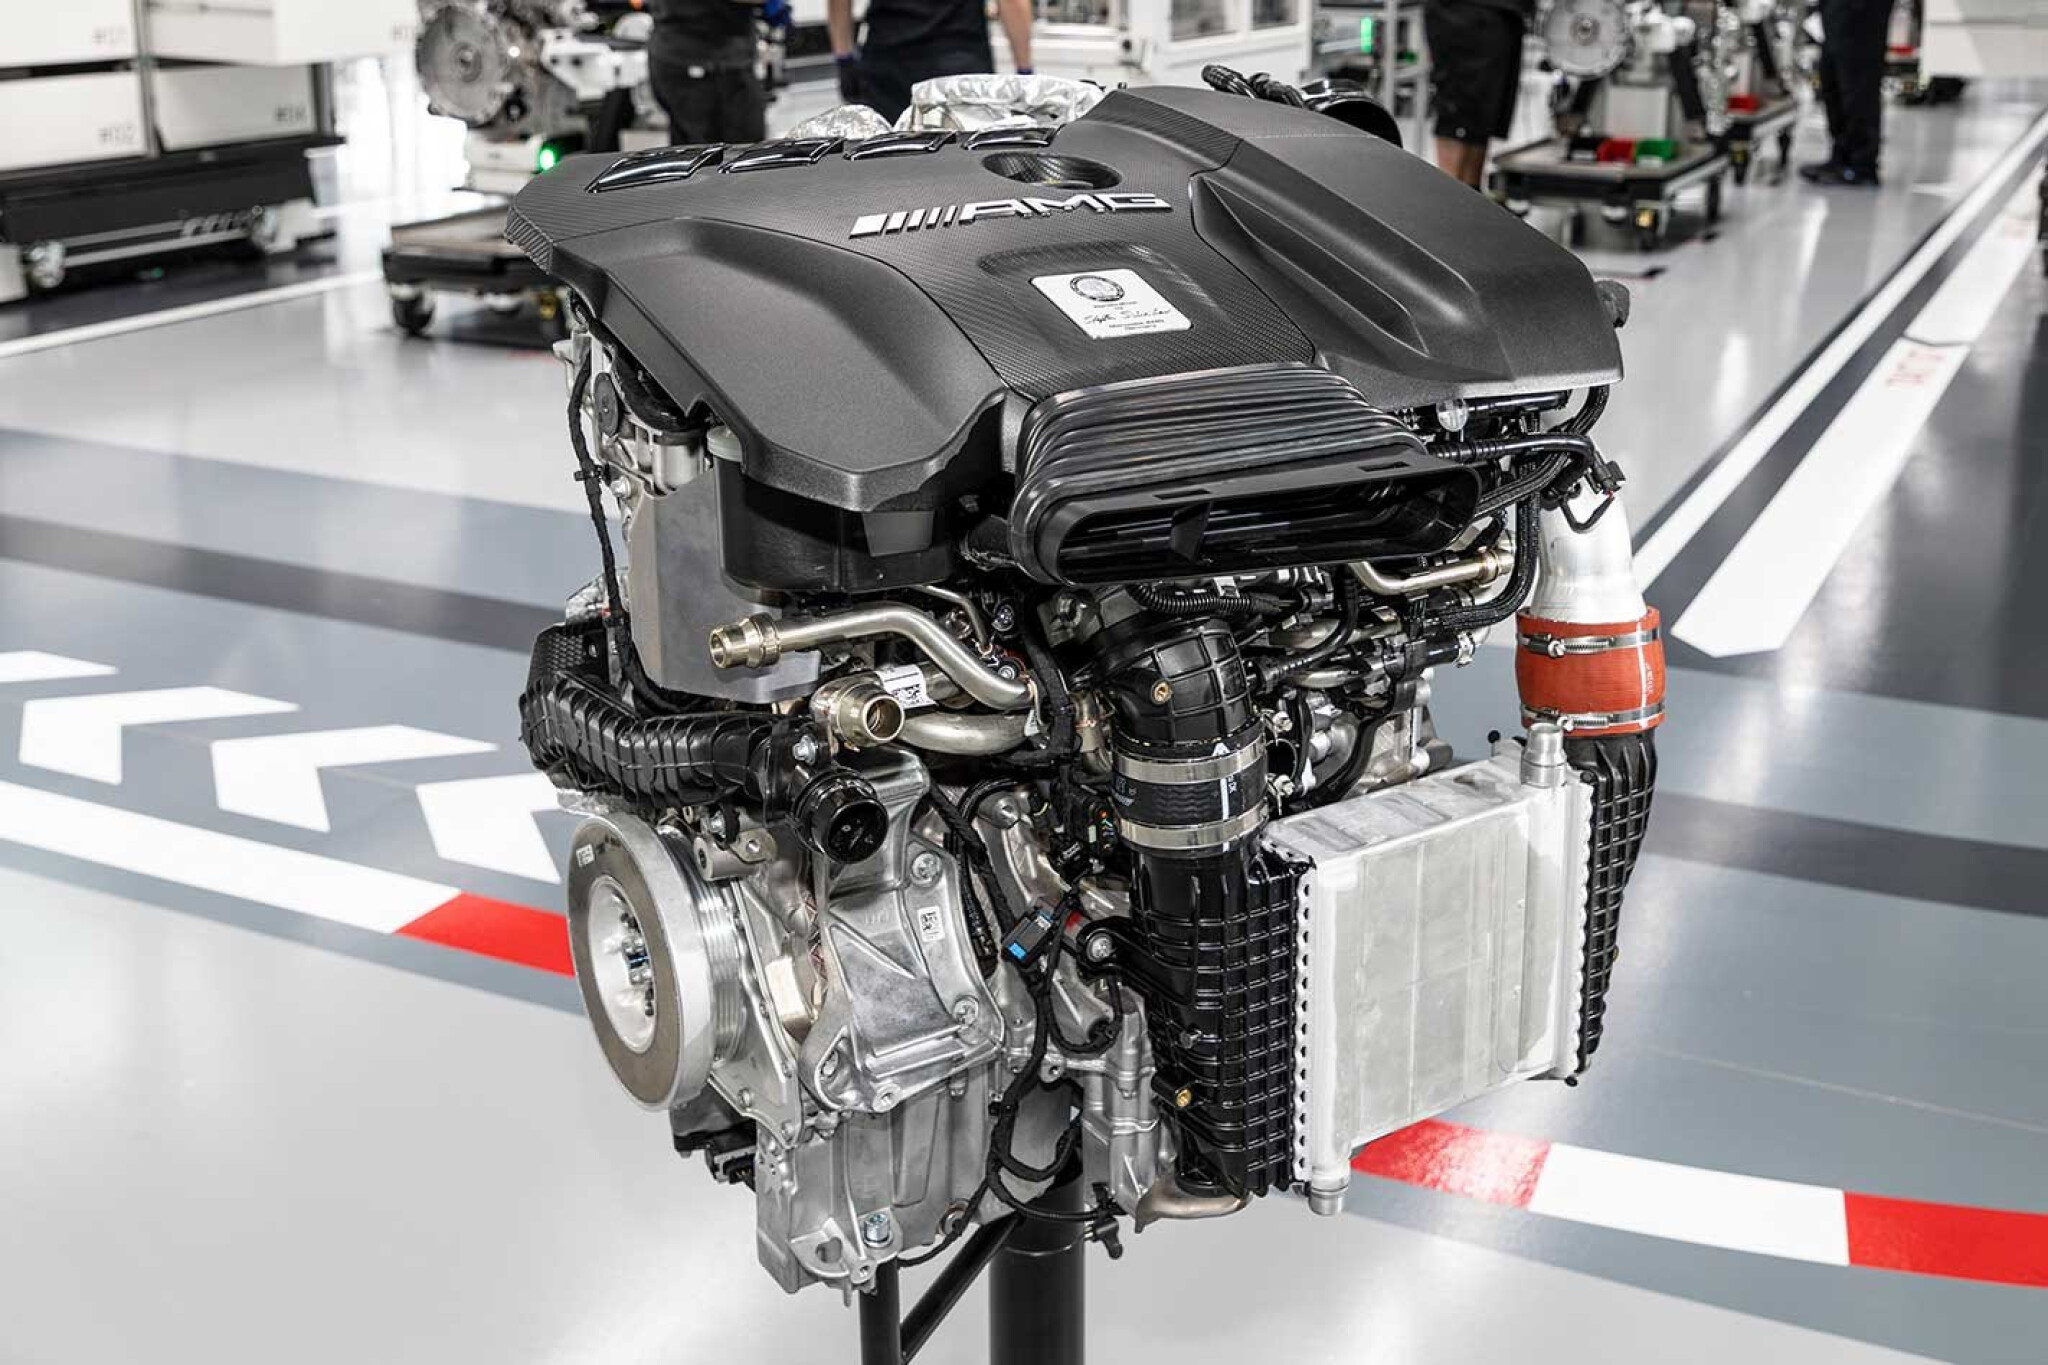 Mercedes-AMG-310kW-M139-engine-explained.jpg